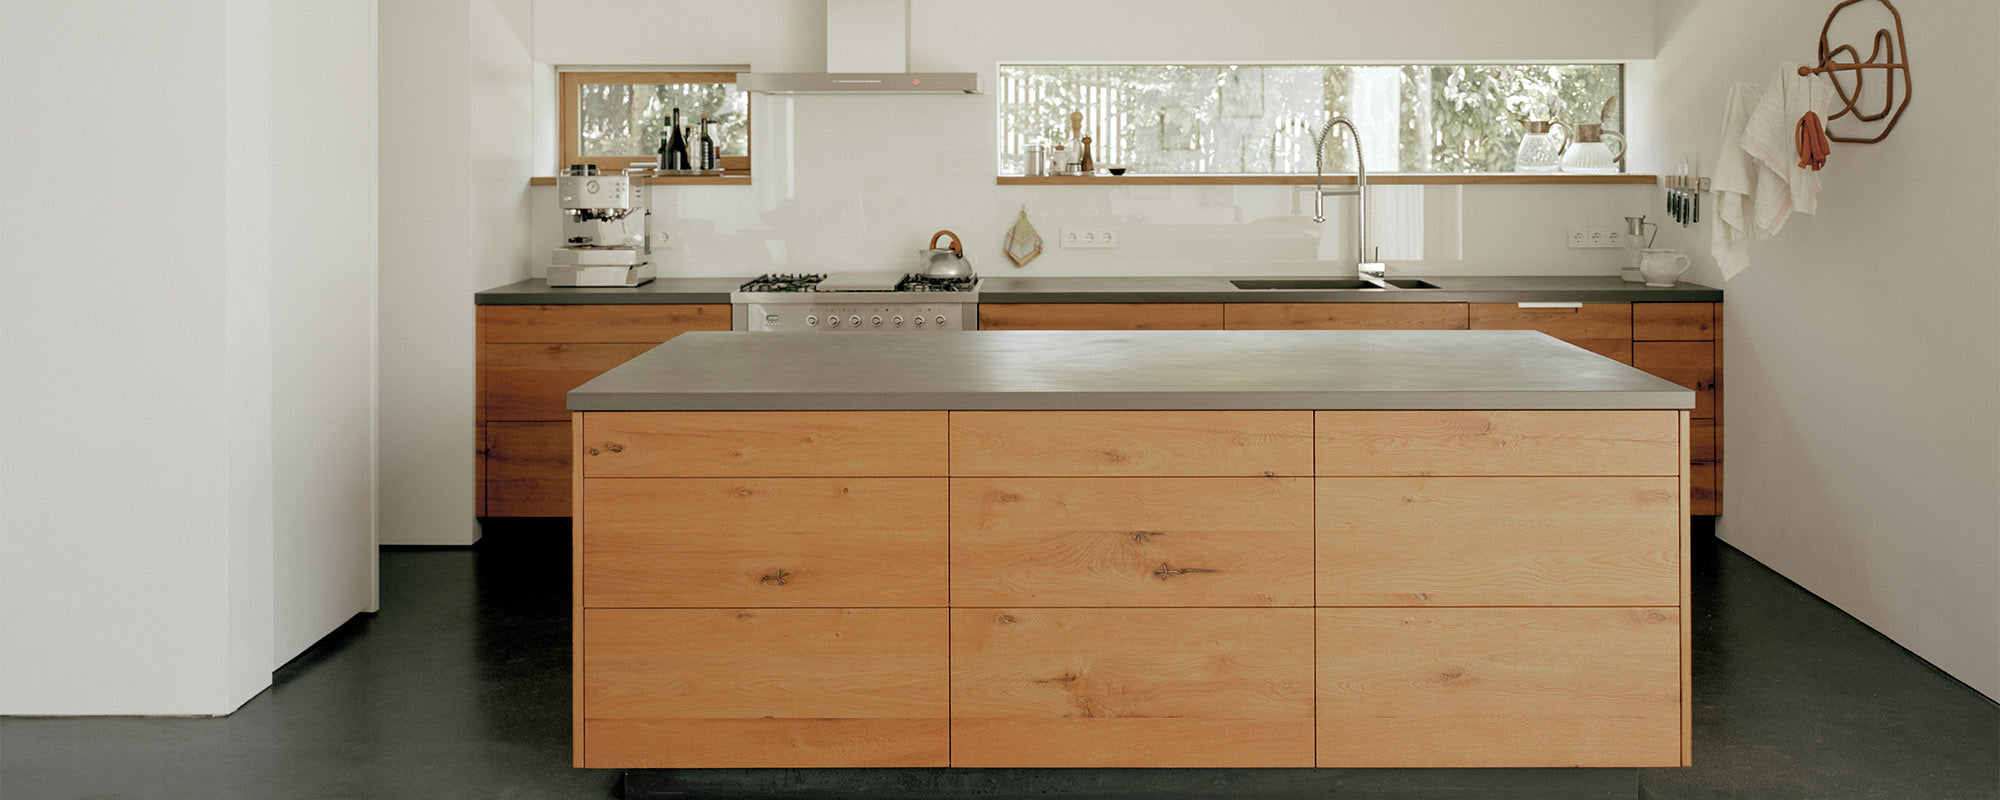 Küchen mit Massivholz, hier in Eiche mit Edelstahlplatte- hochwertige und moderne Massivholzküchen - Küchenplanung vom Innenarchitekt